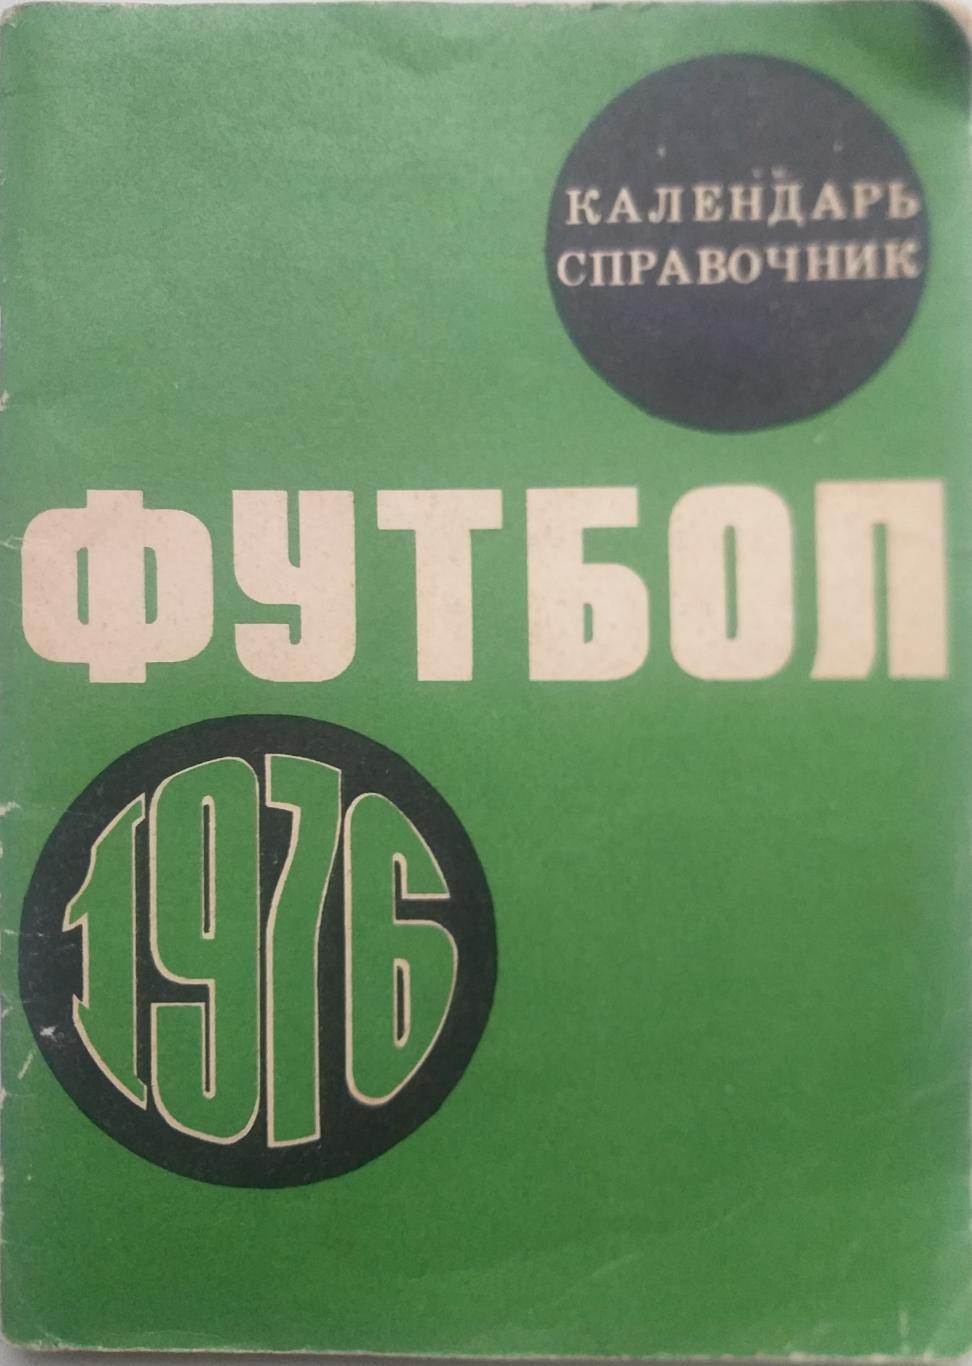 Календарь справочник футбол Москва Лужники 1976